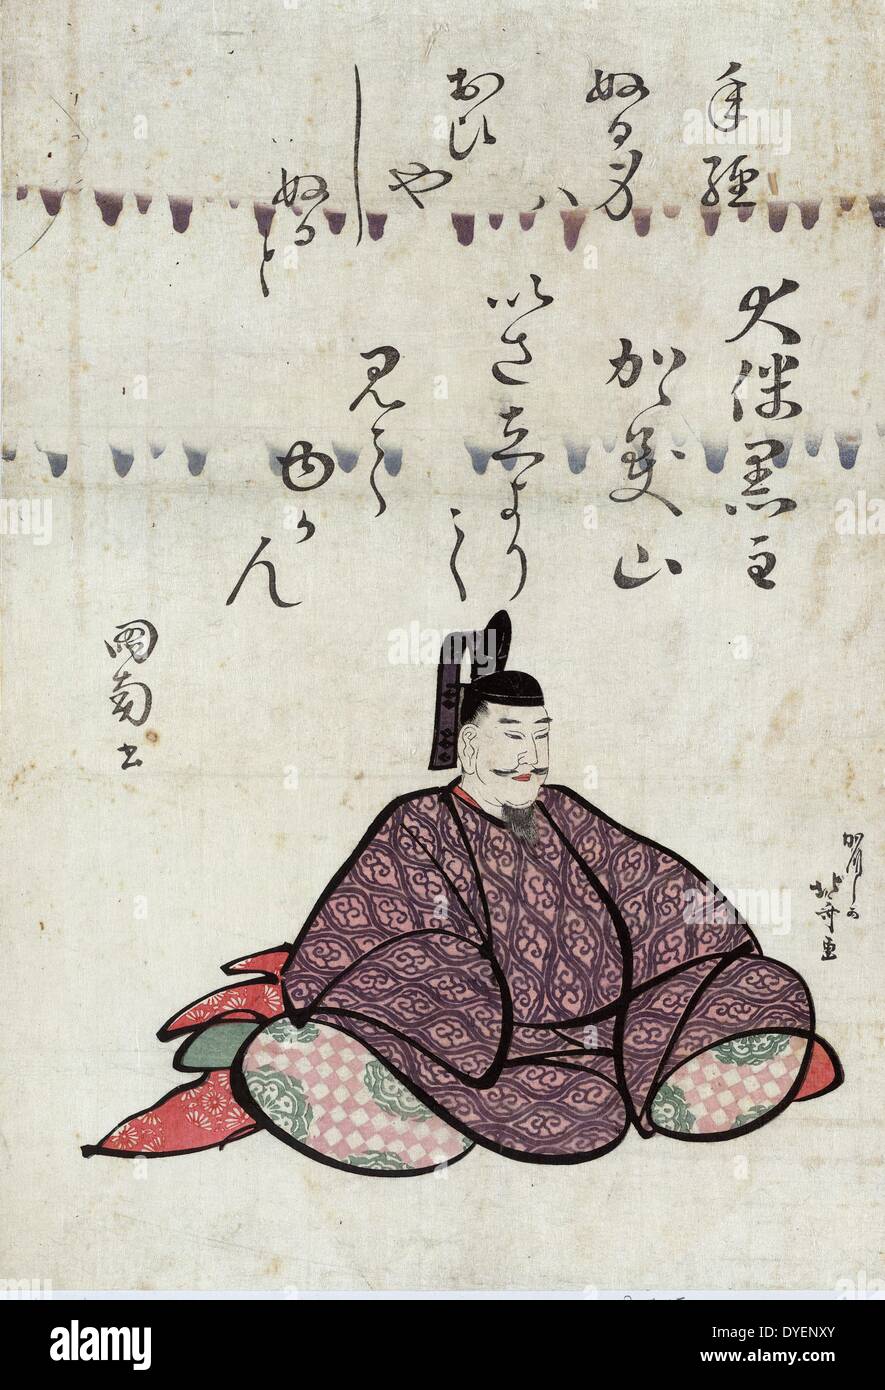 Otomo no kuronushi de Hokusai, 1760-1849, artiste japonais. d entre 1804 et 1812. Imprimer montre Otomo Kuronushi, poète, assis, faisant face à droite. Banque D'Images